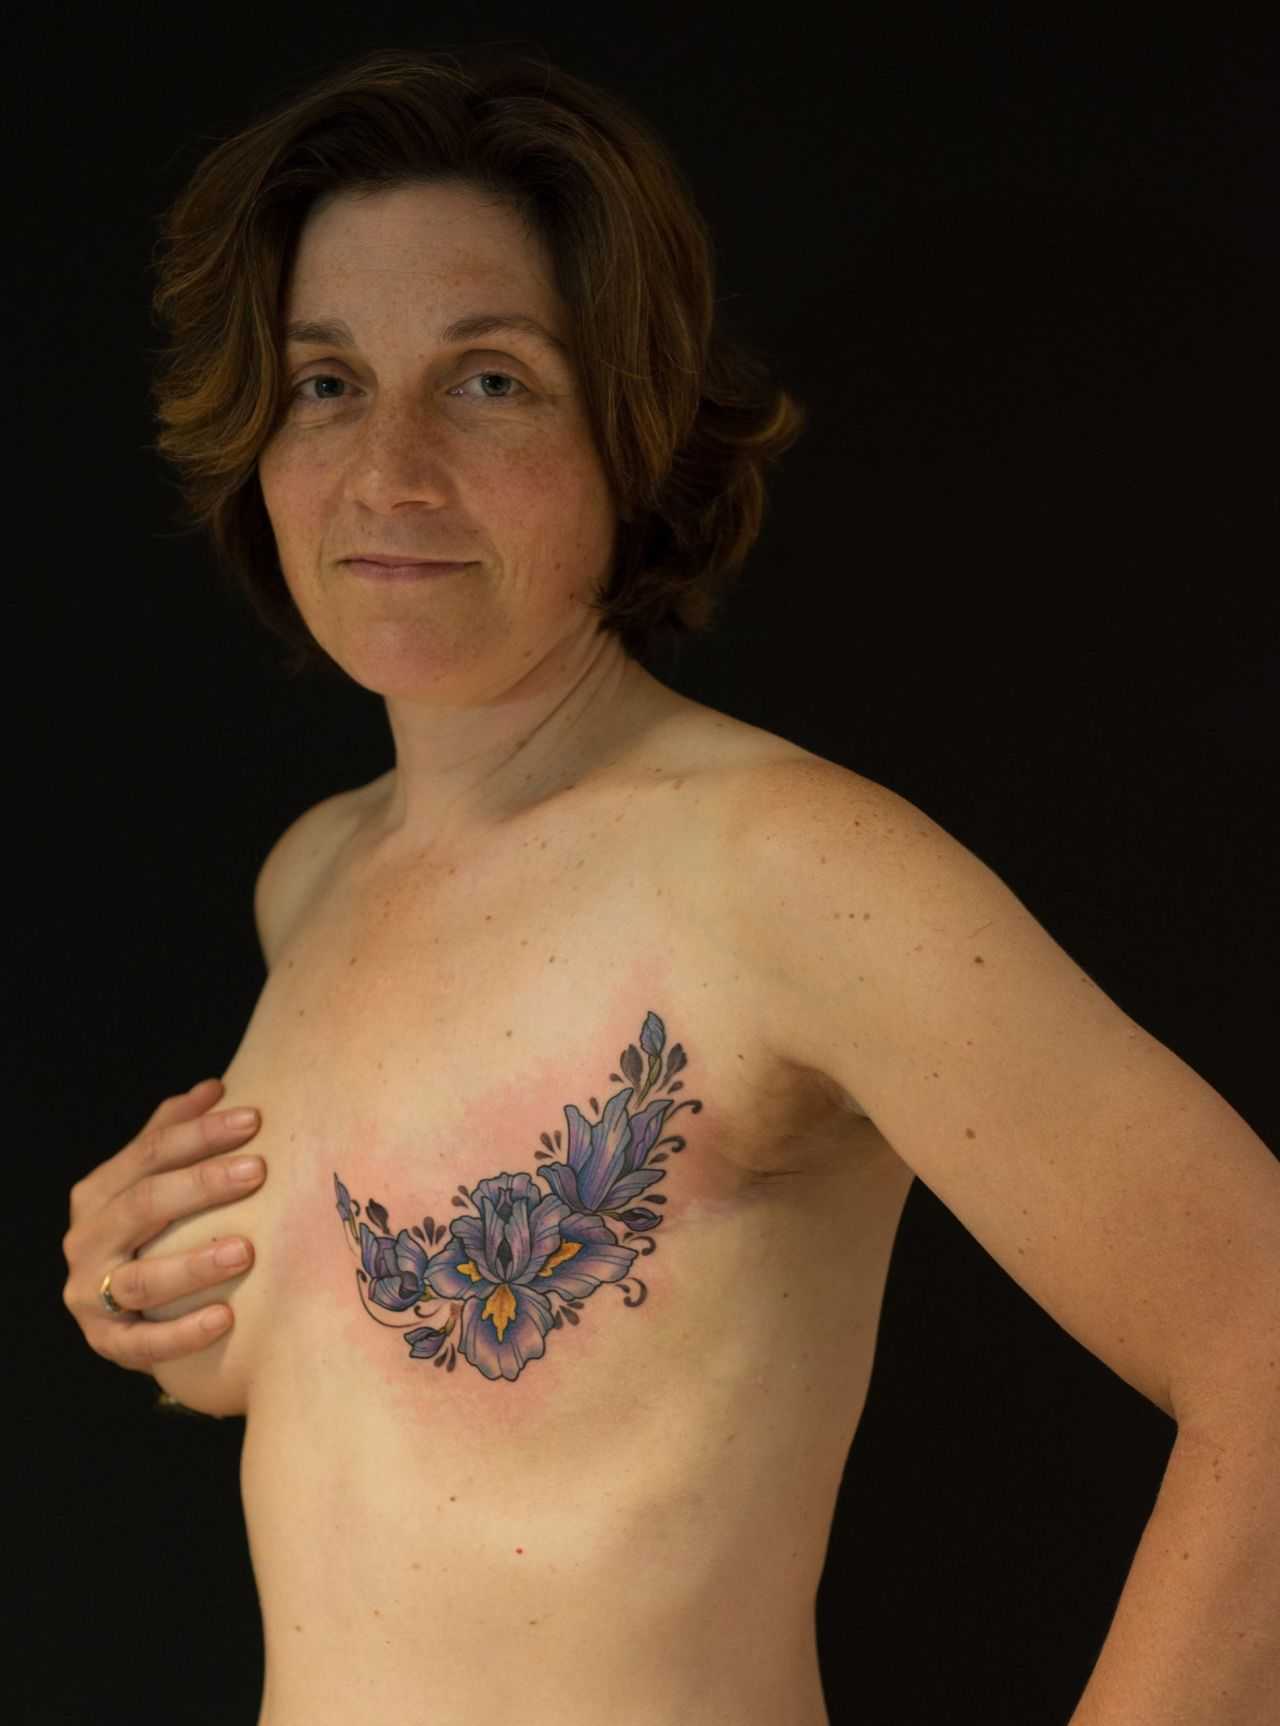 удаление и восстановление груди в одну операцию фото 47